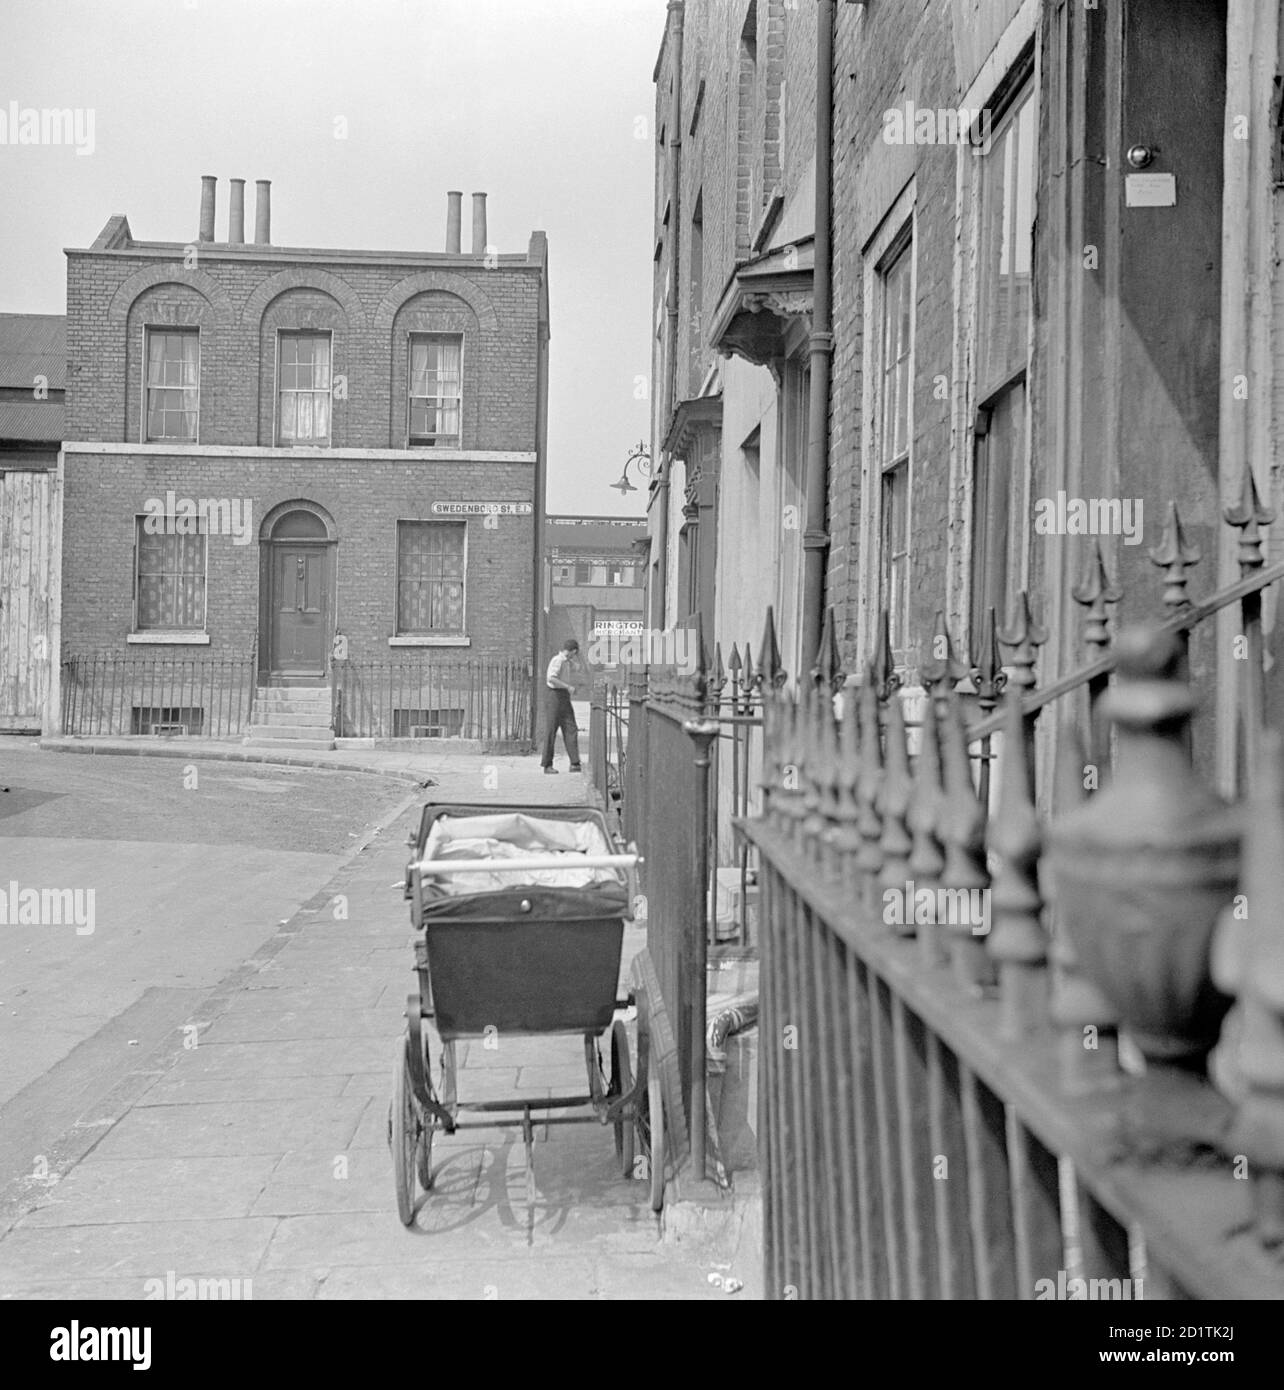 SWEDENBORG SQUARE, Stepney, London. Ein Kinderwagen steht auf dem Bürgersteig vor einem Haus auf dem Swedenborg-Platz. An der Ecke steht ein freistehendes Haus. Fotografiert von Eric de Mare. Datumsbereich: 1945-1960. Stockfoto